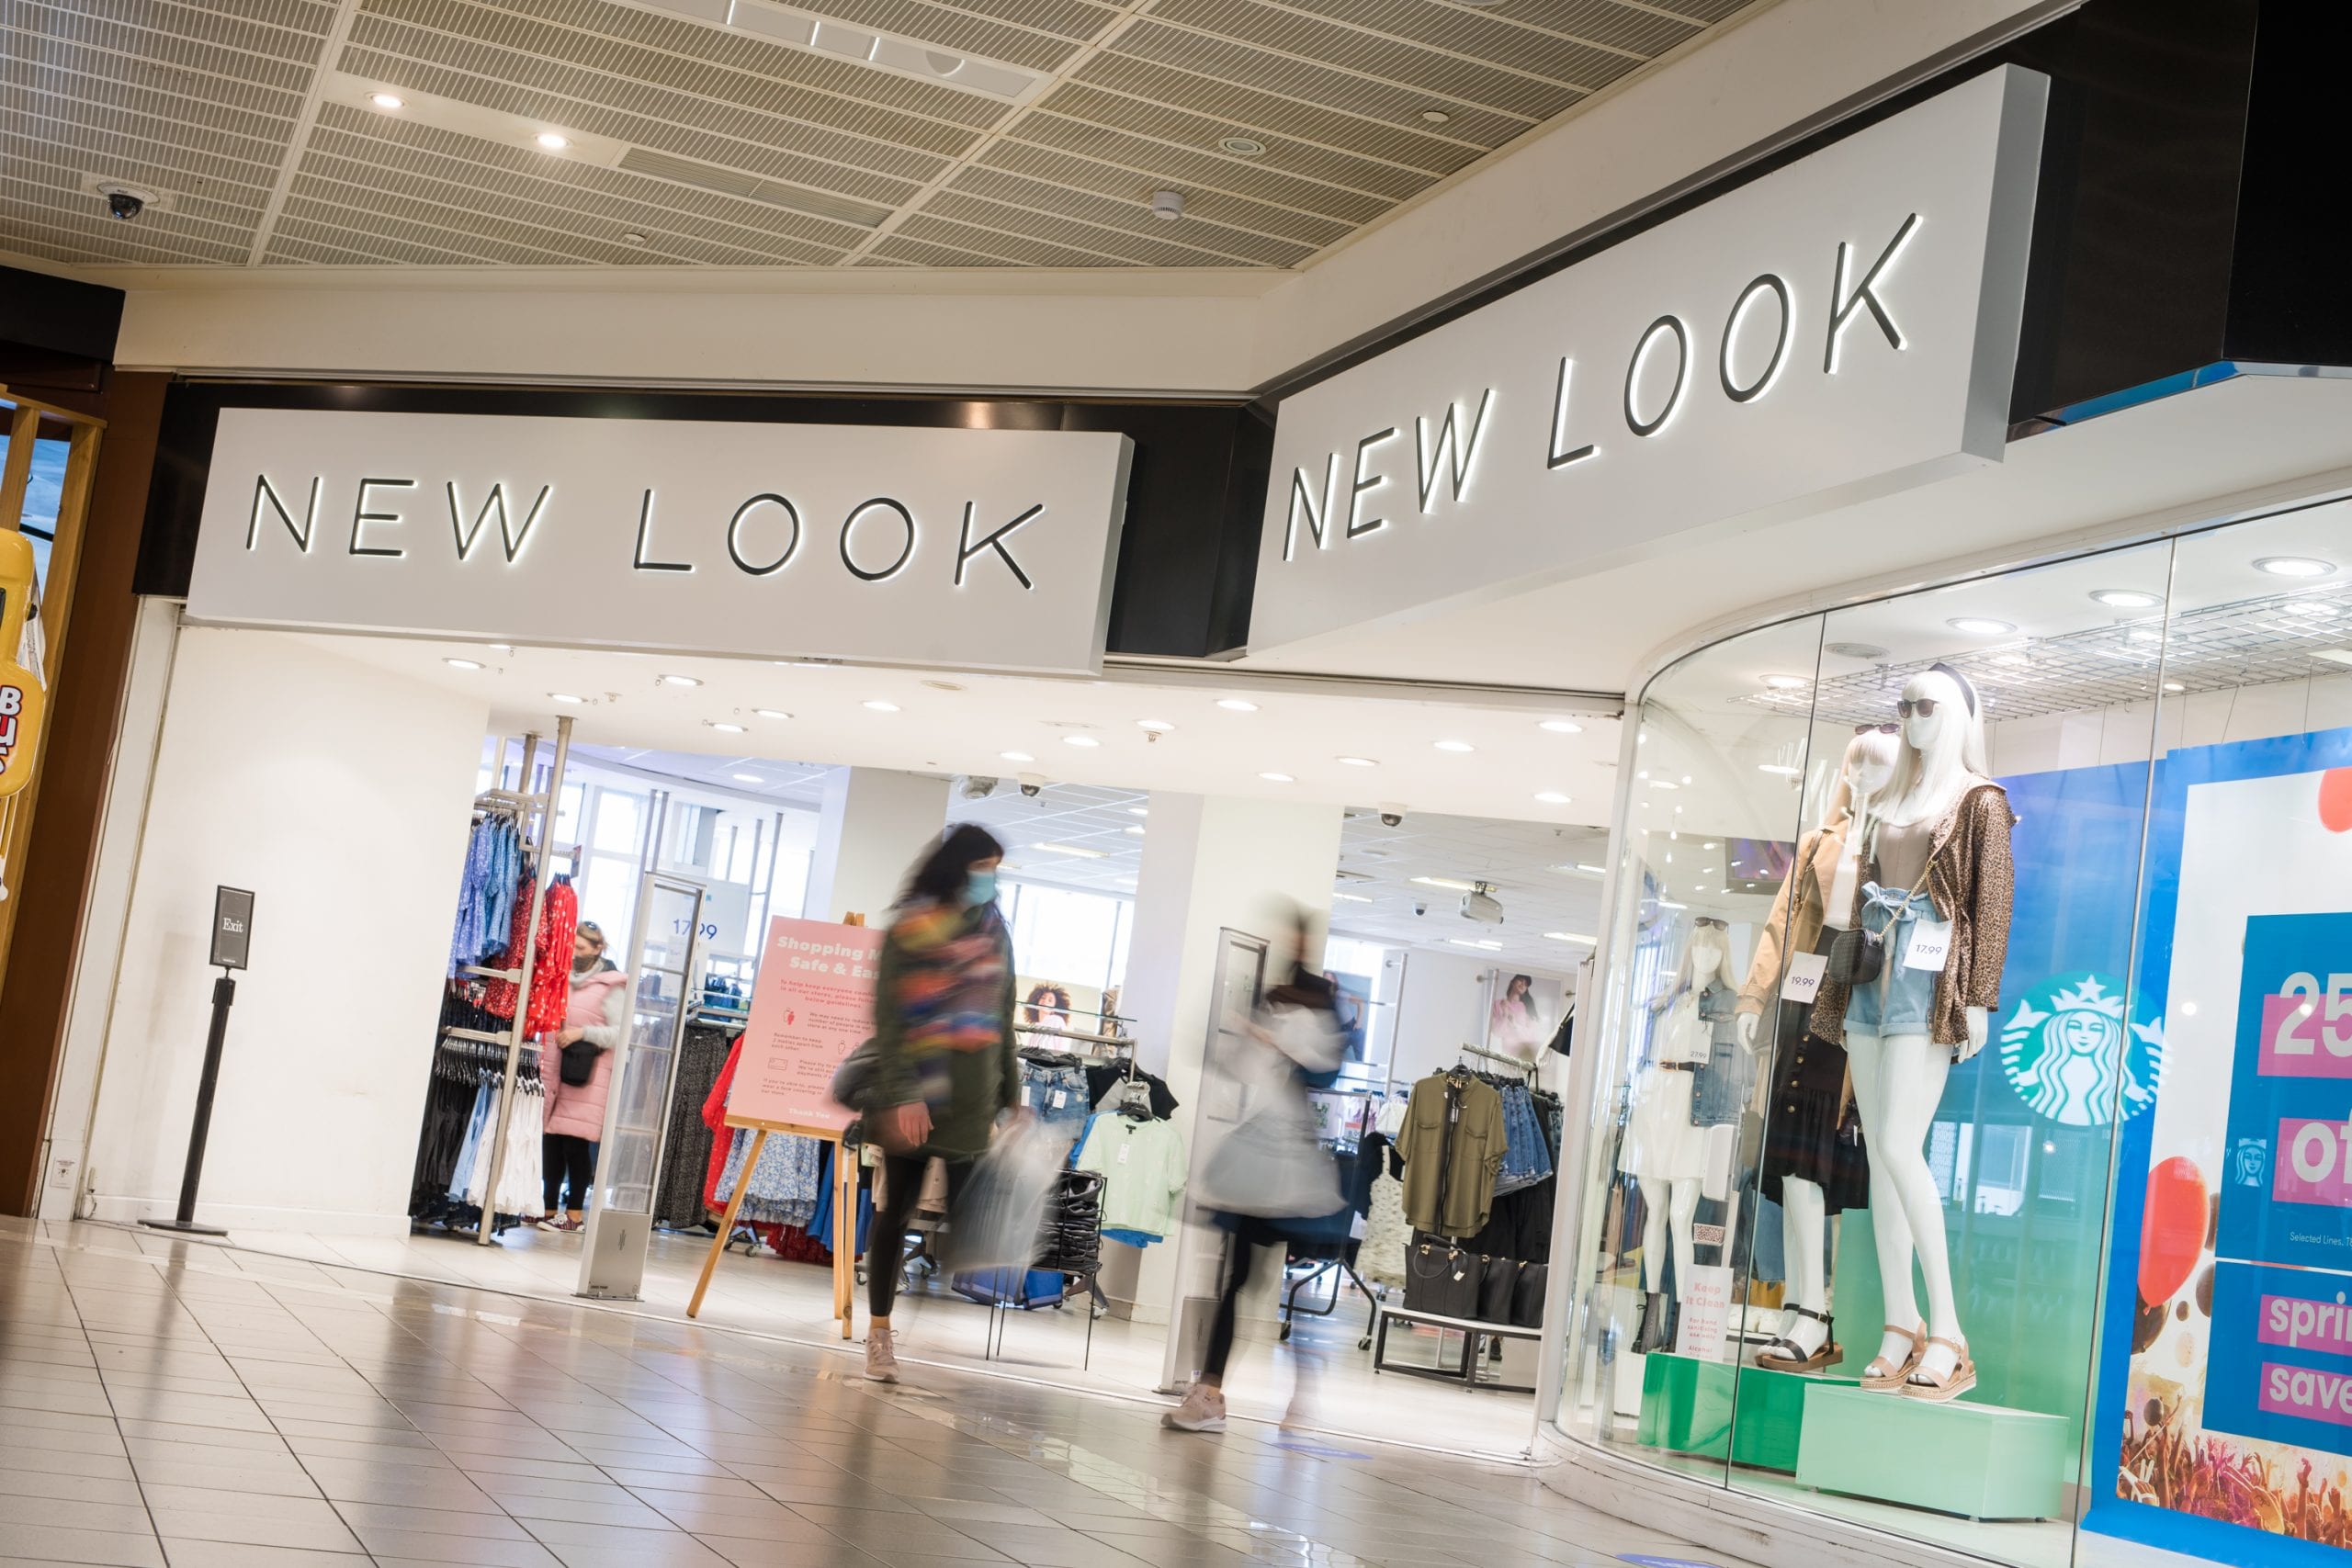 New Look | CastleCourt Shopping Centre Belfast